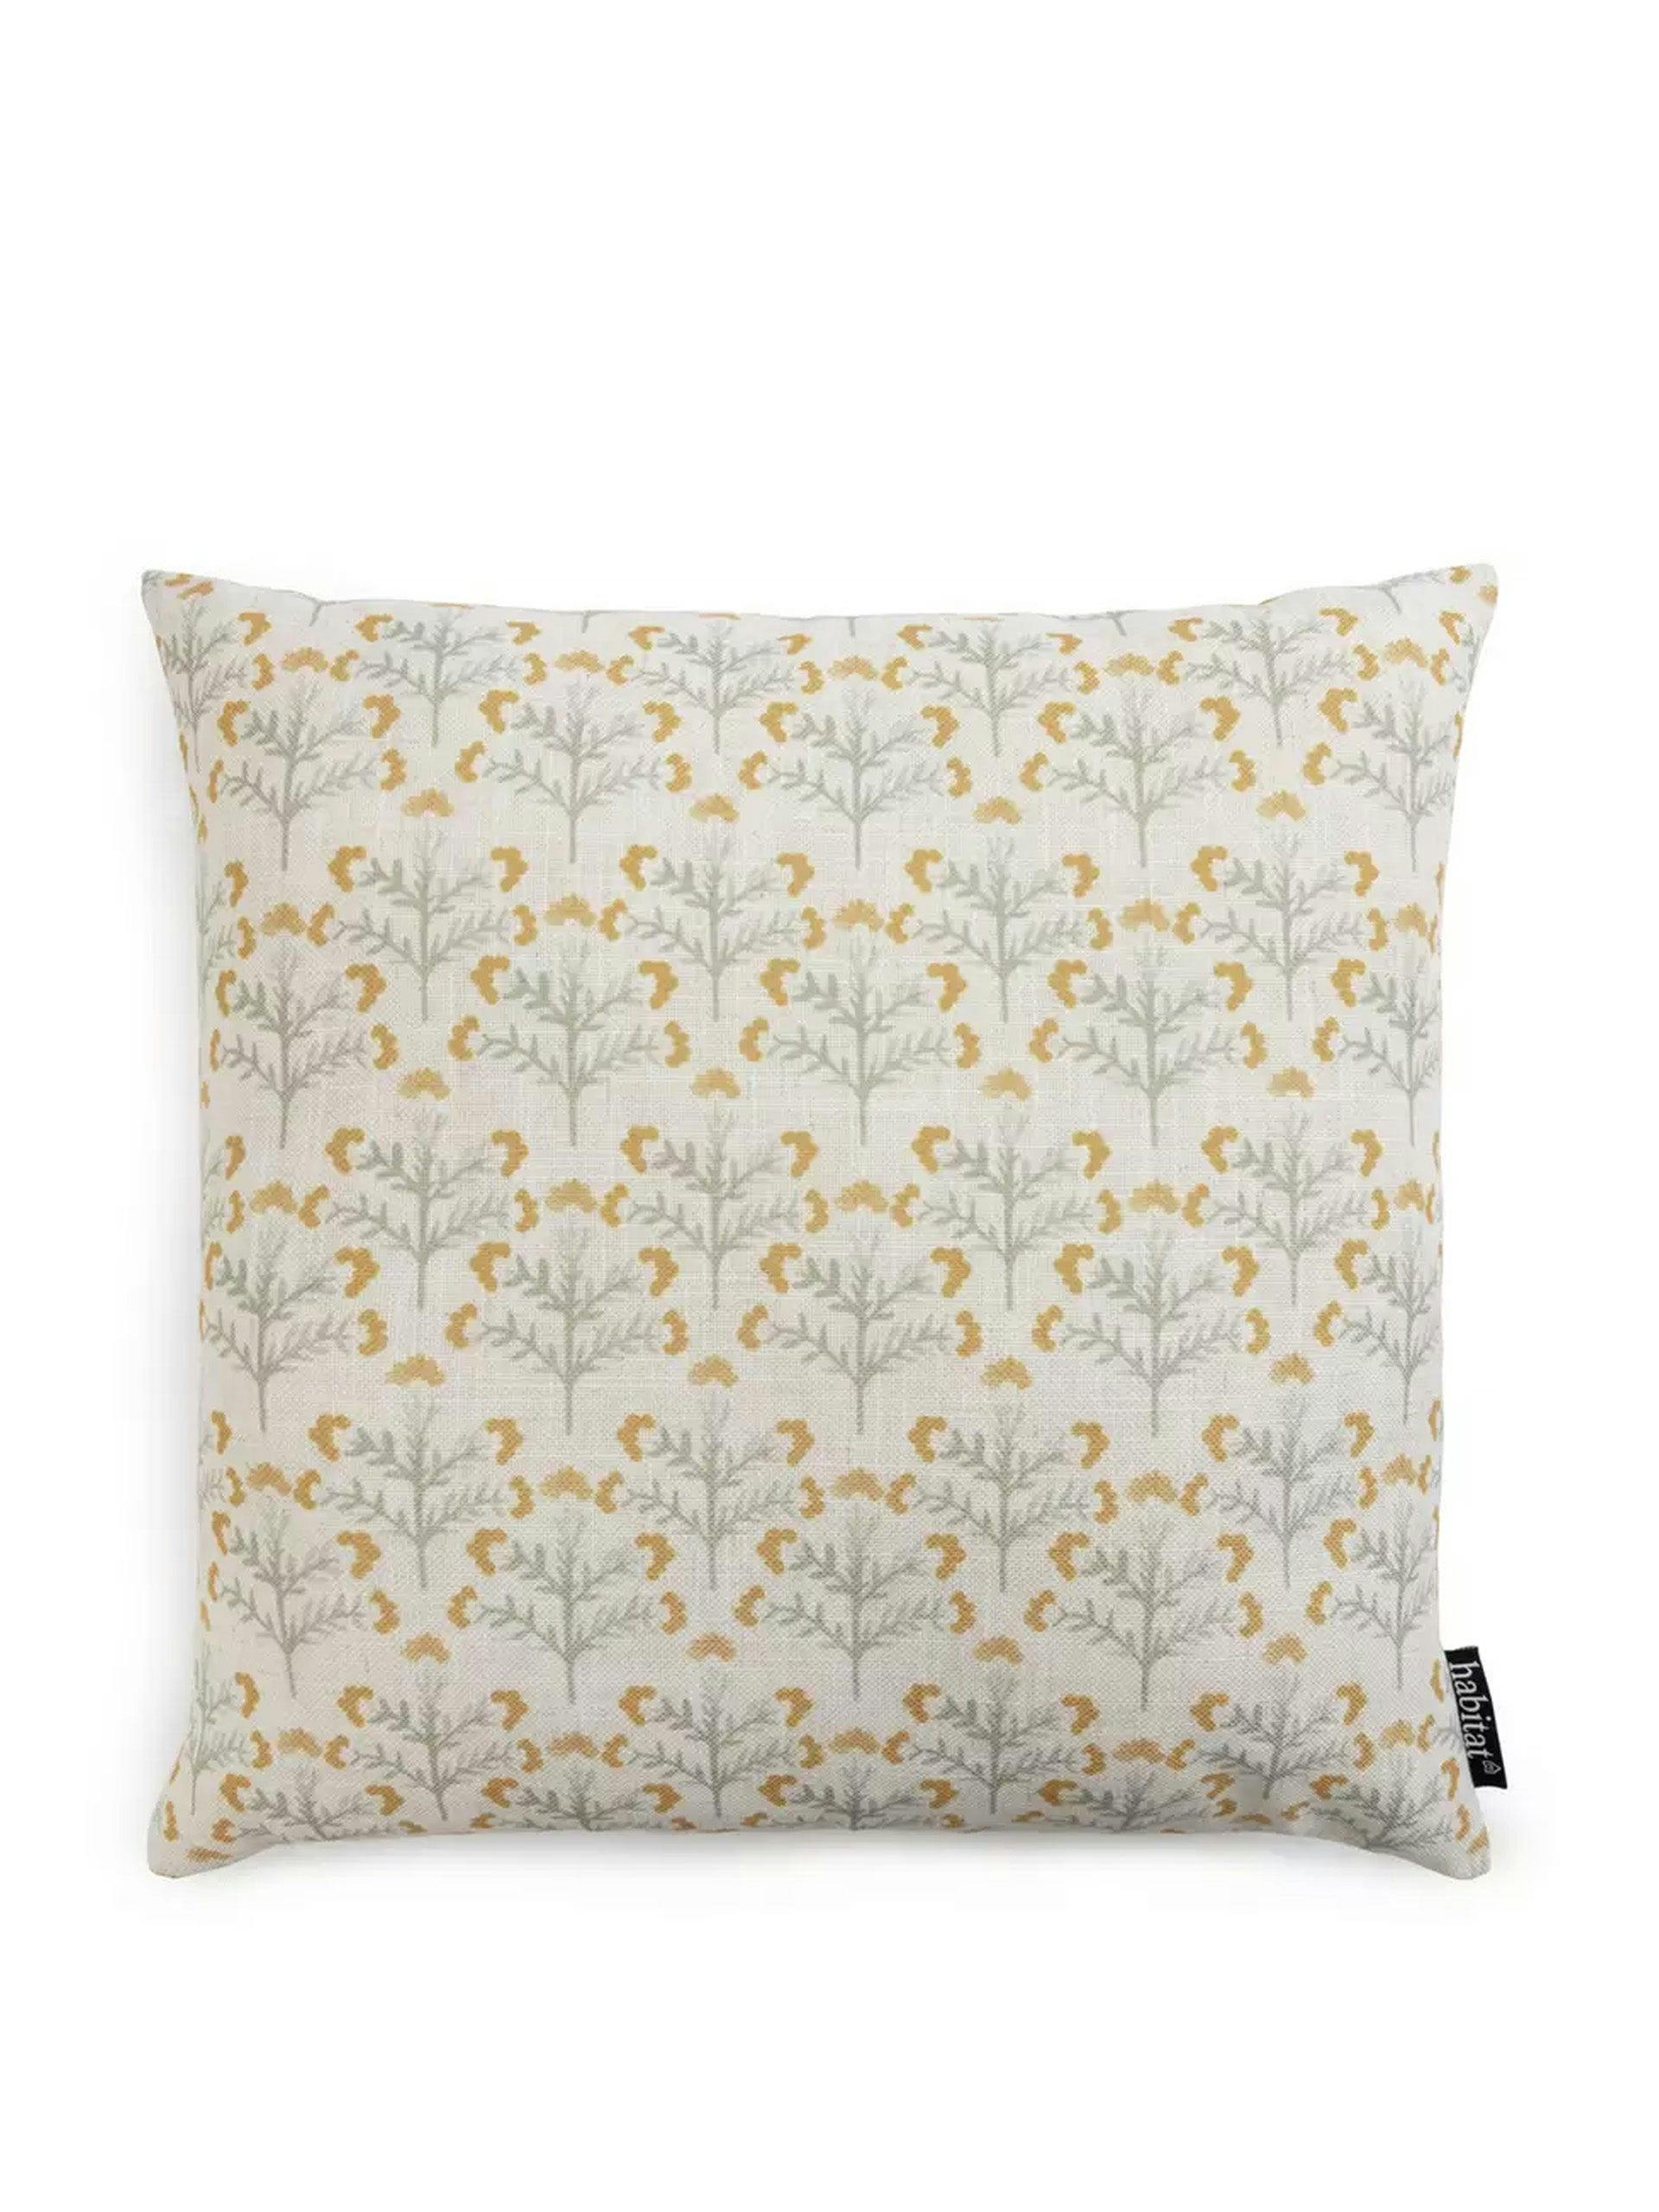 Floral printed cushion